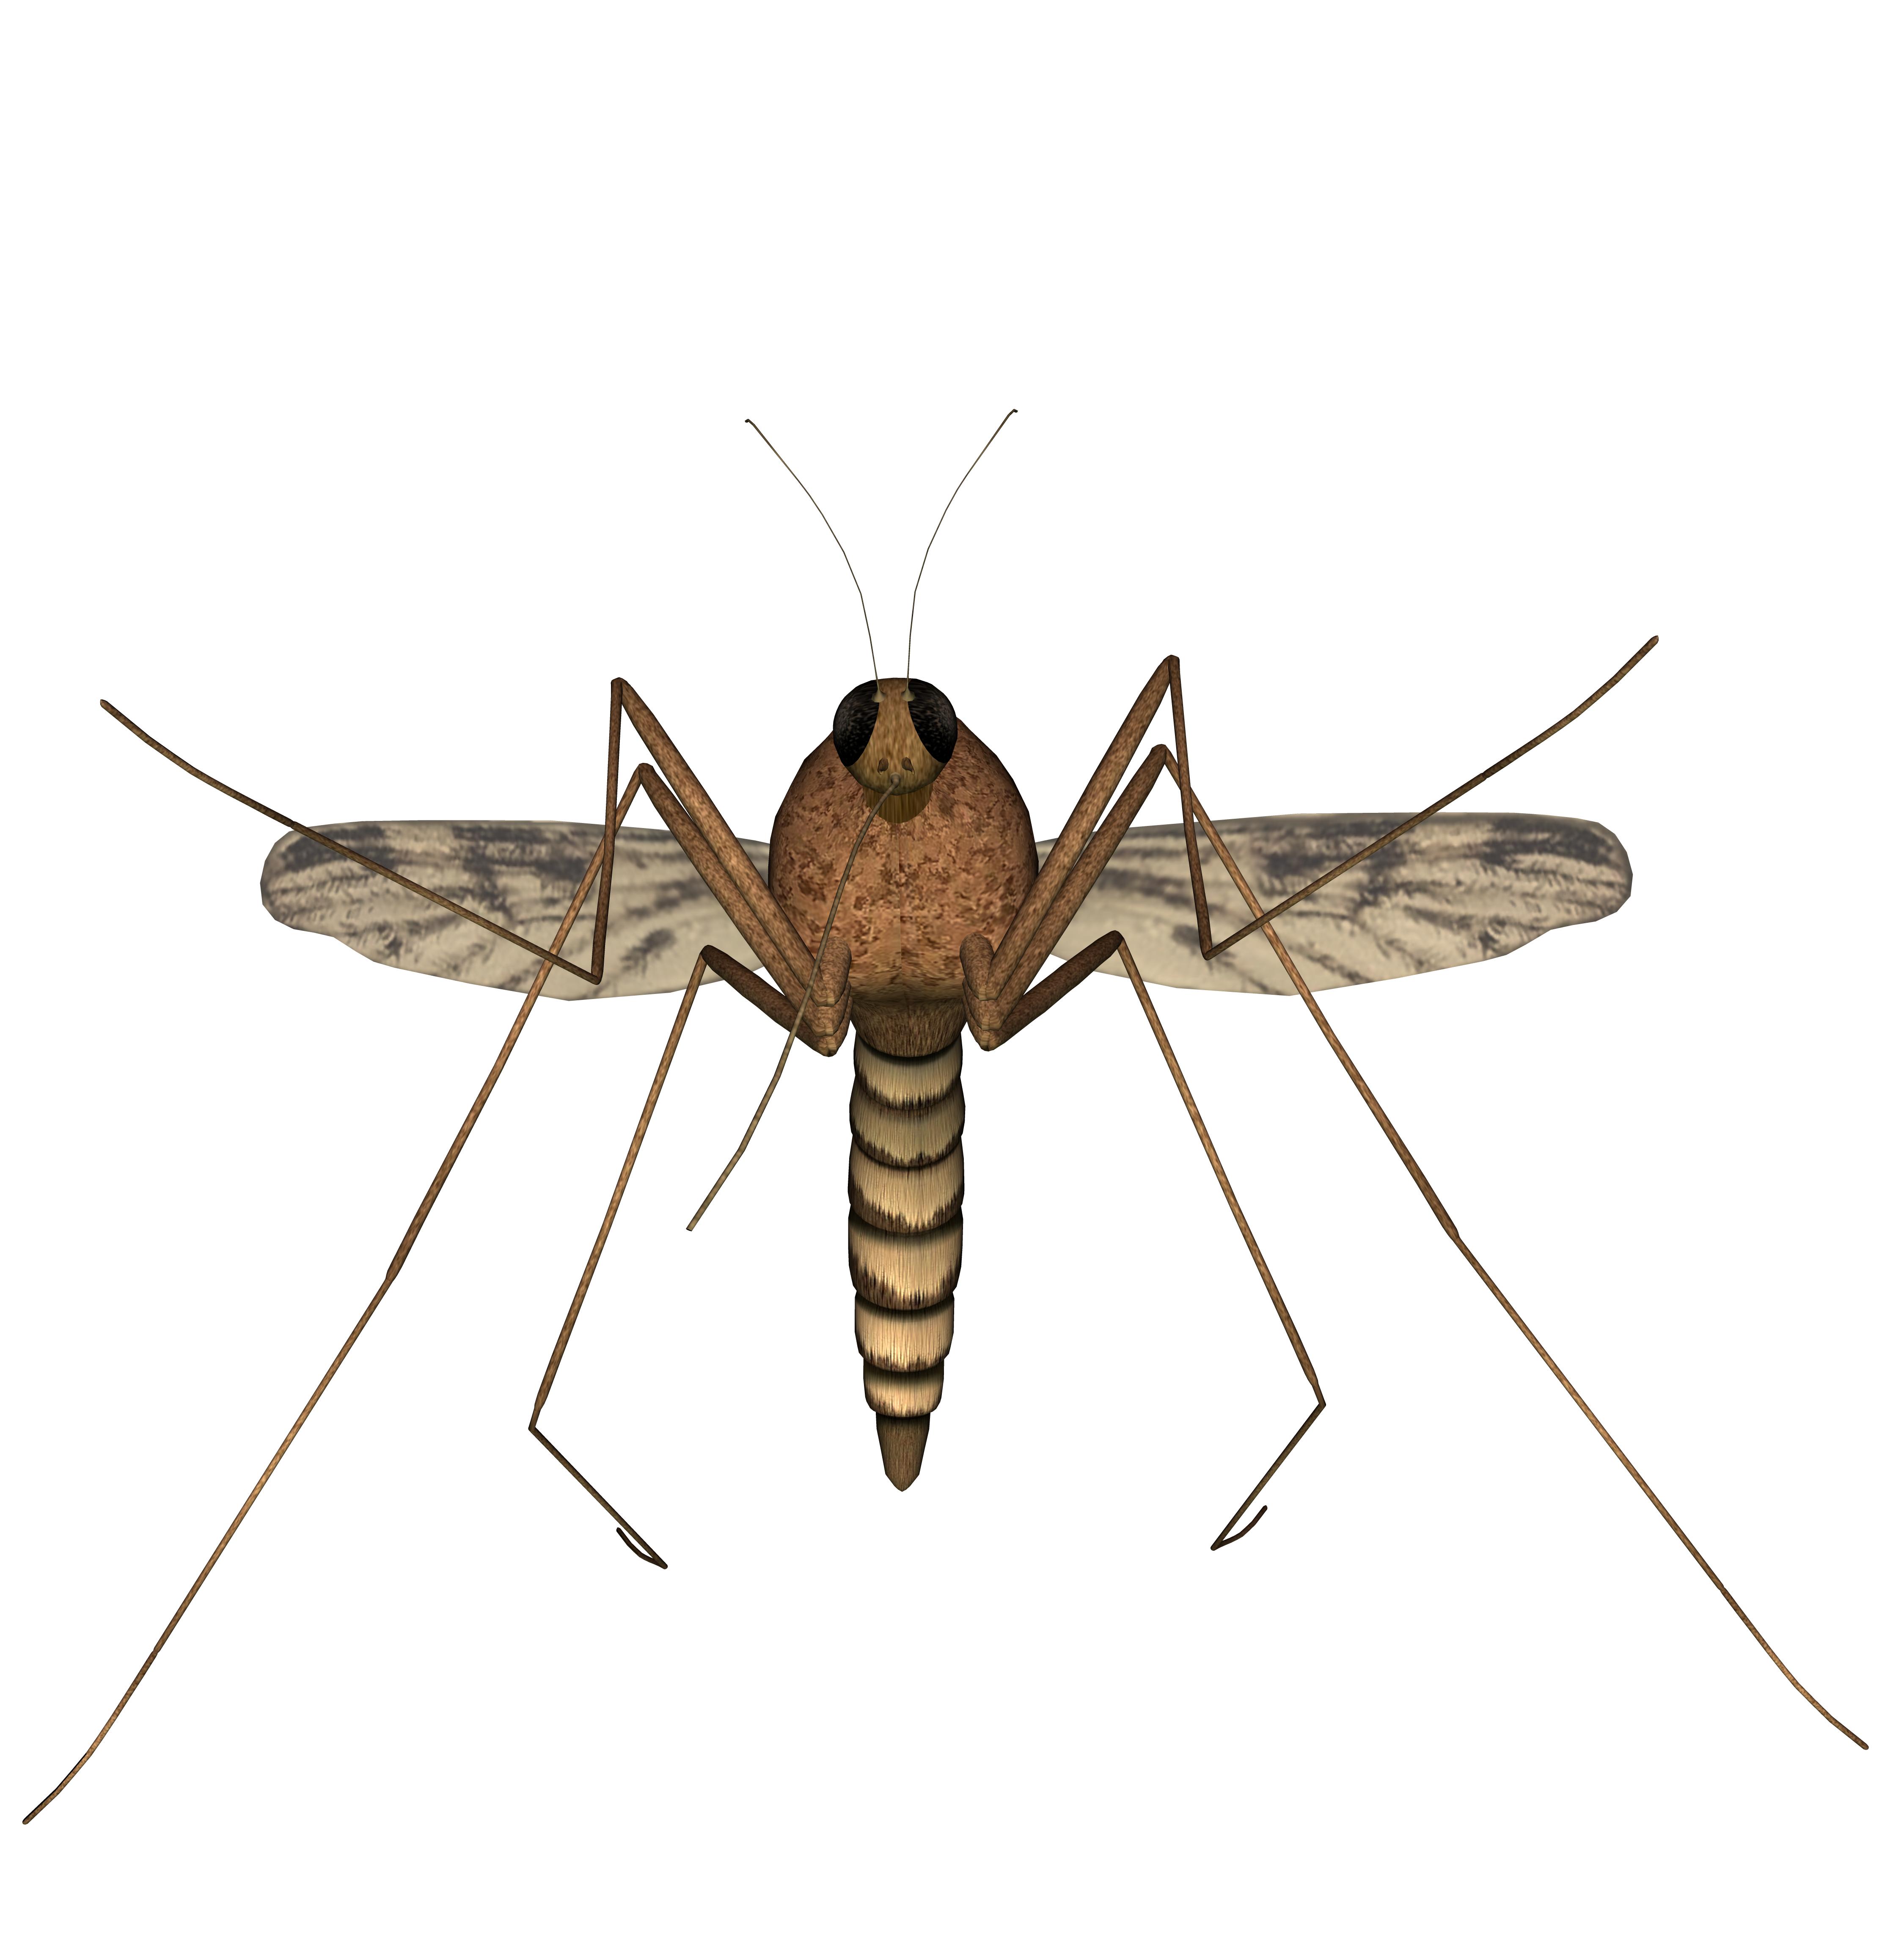 How to Treat Mosquito Bites with Aloe Vera